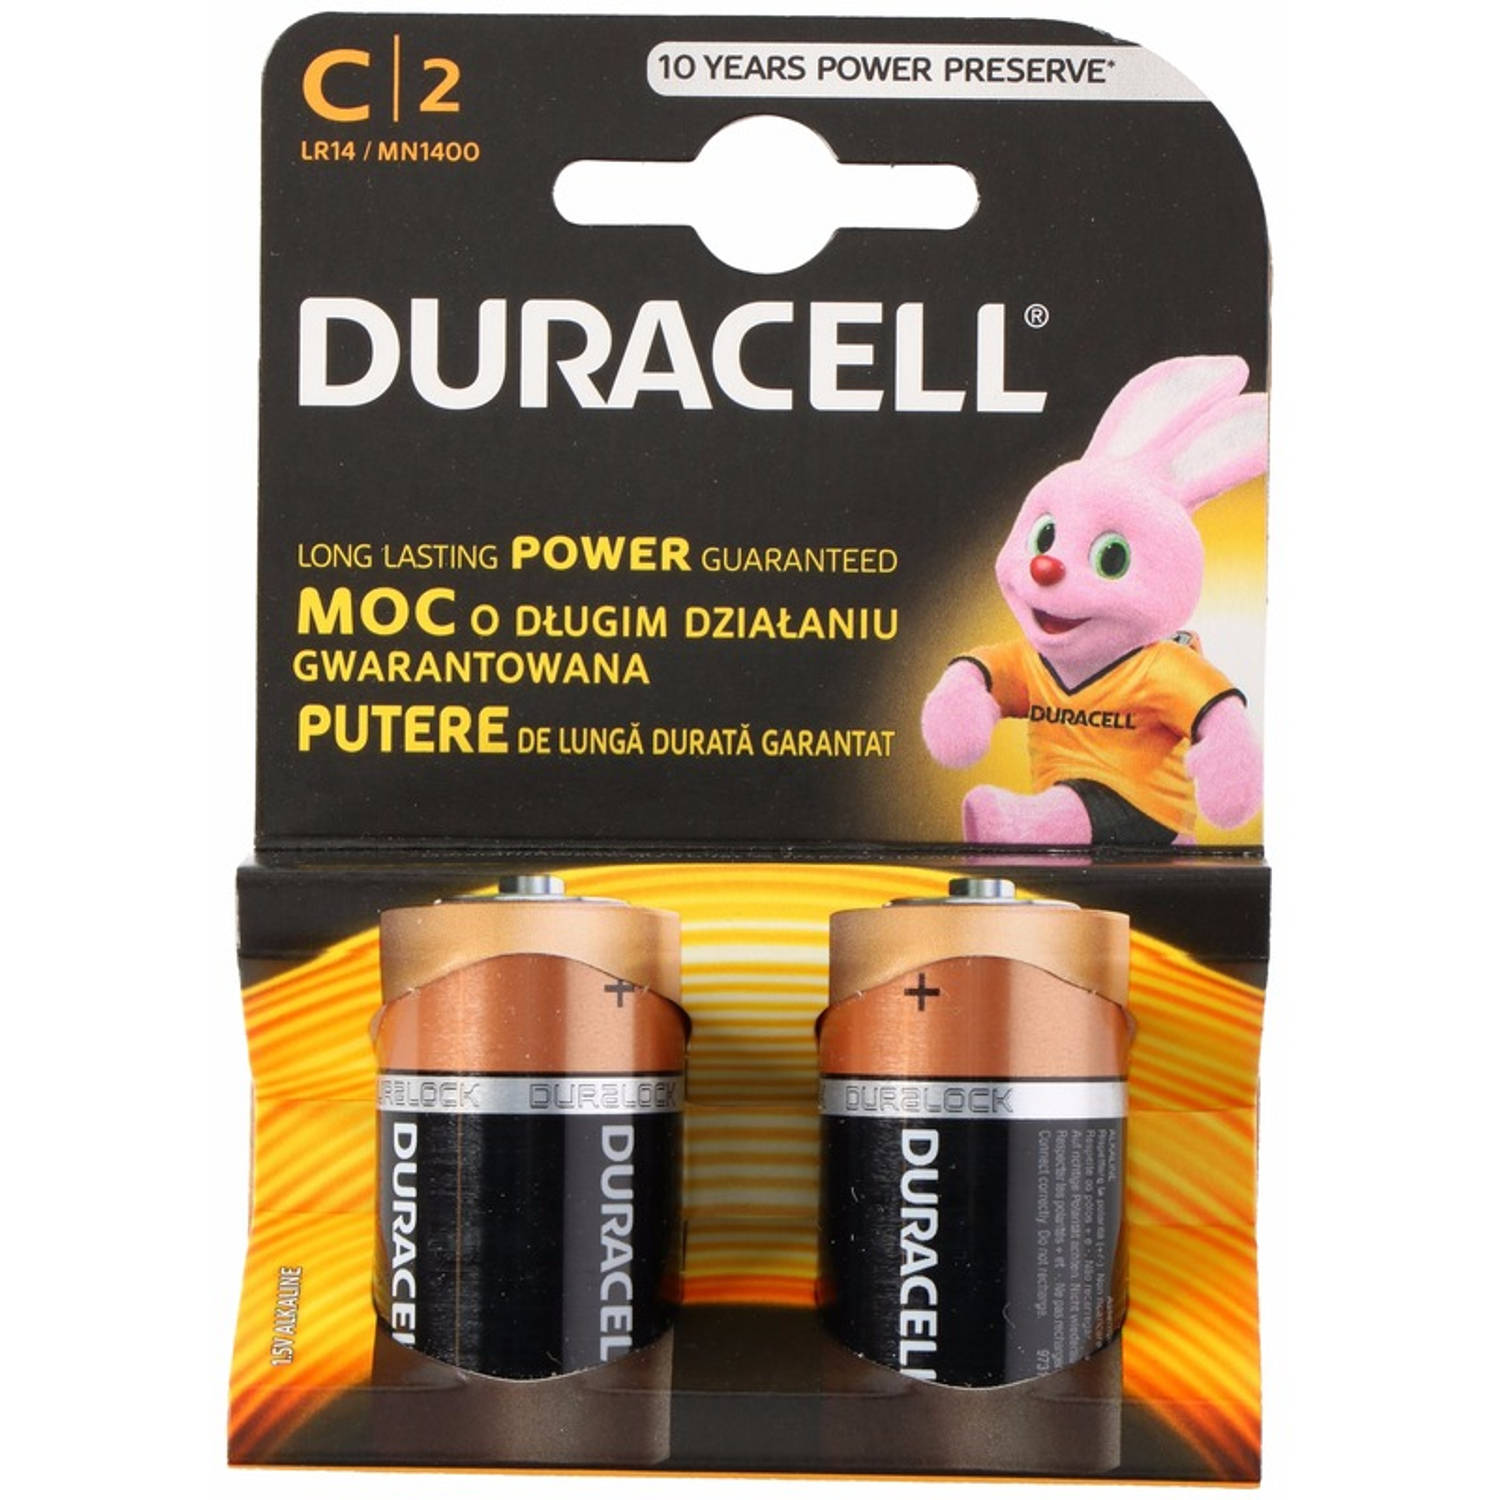 Duracell alkalnine batterijen CR14 8 stuks - Batterijen